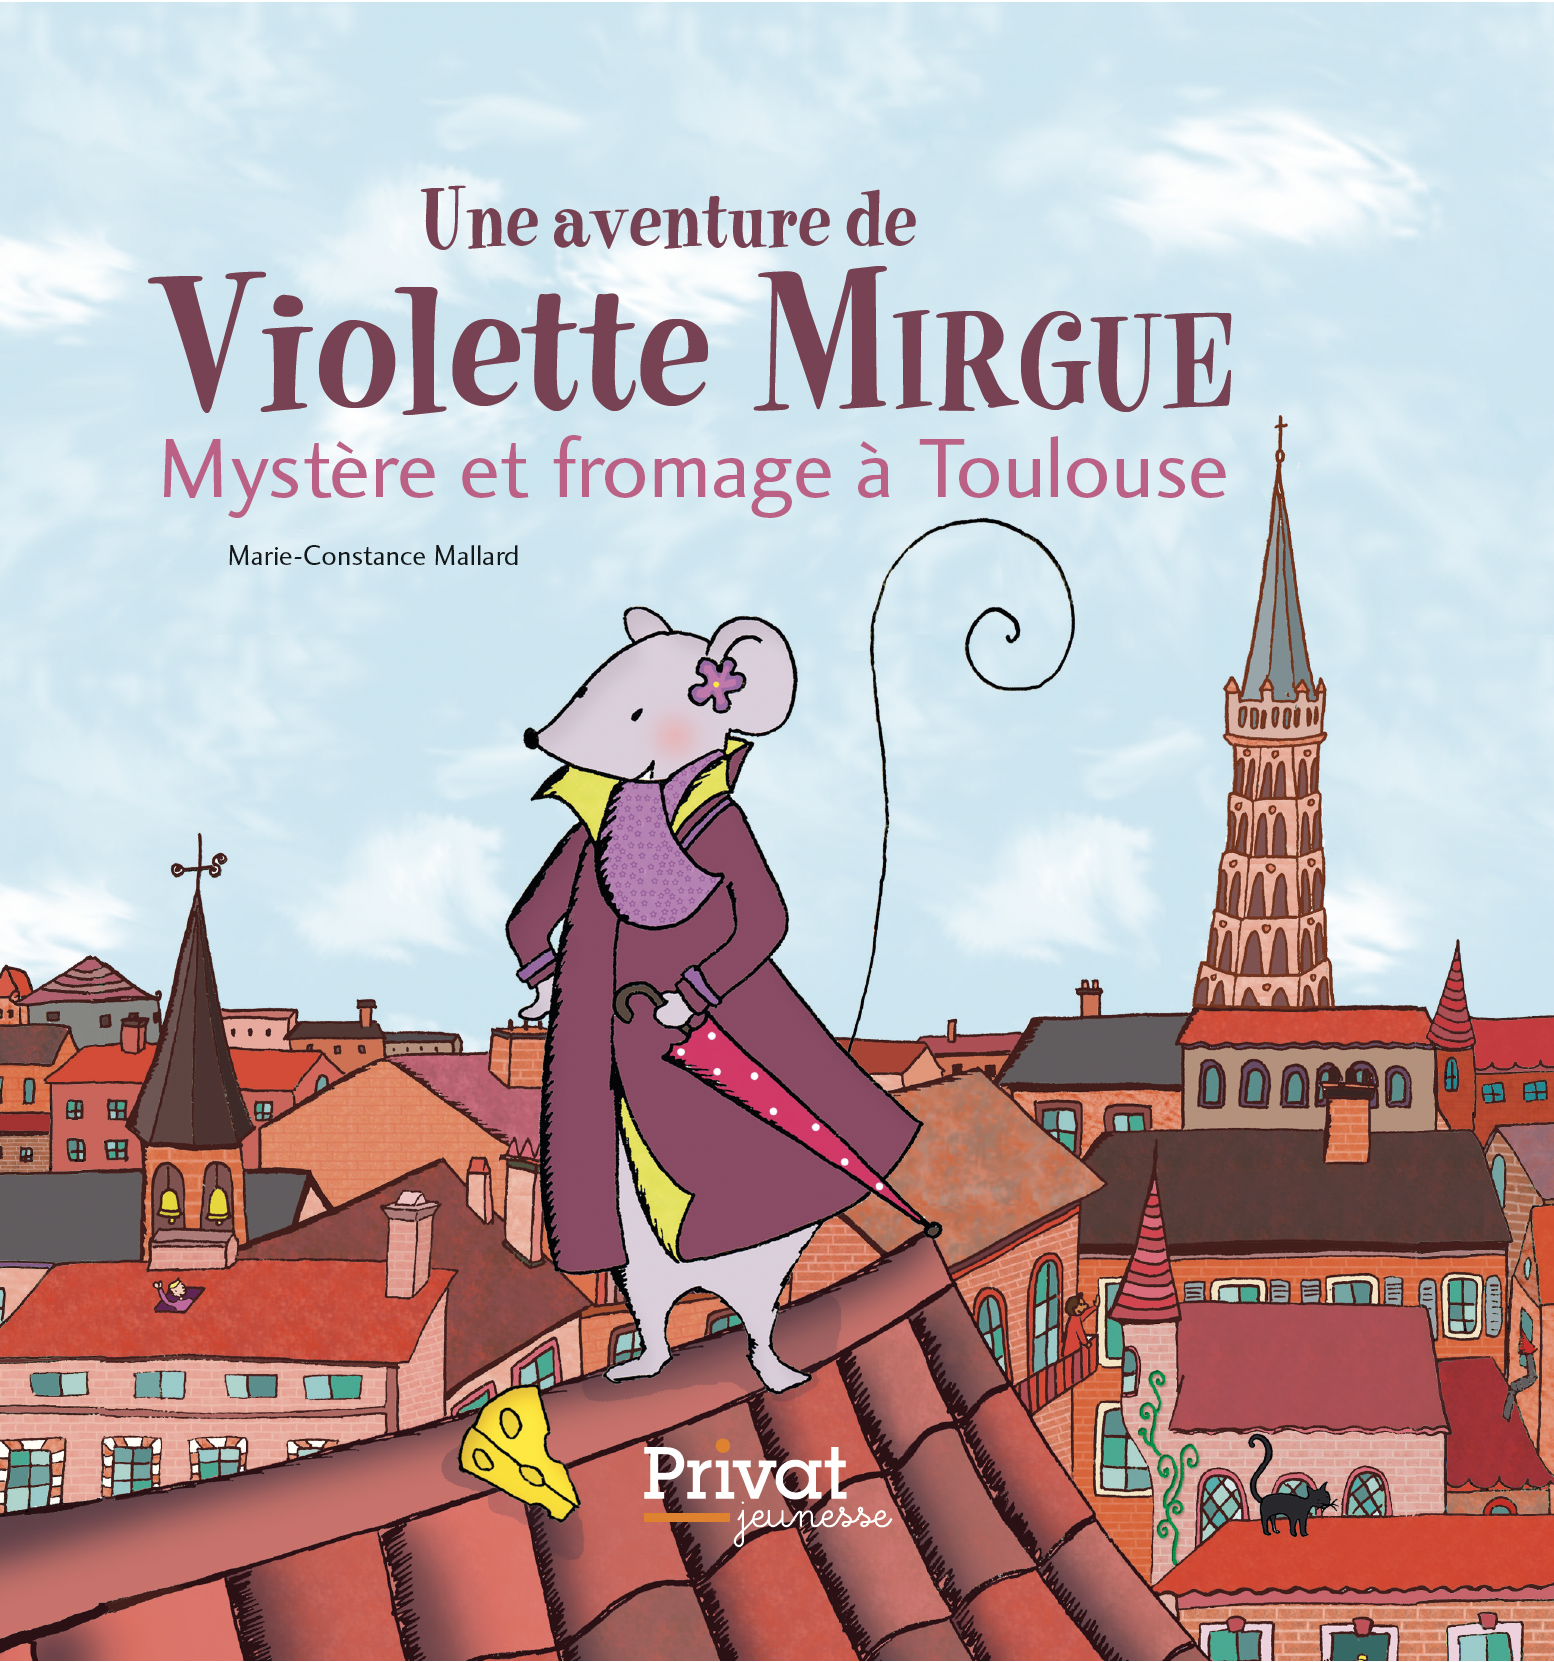 Toulouse et la violette : une histoire d'amour! - Tourisme